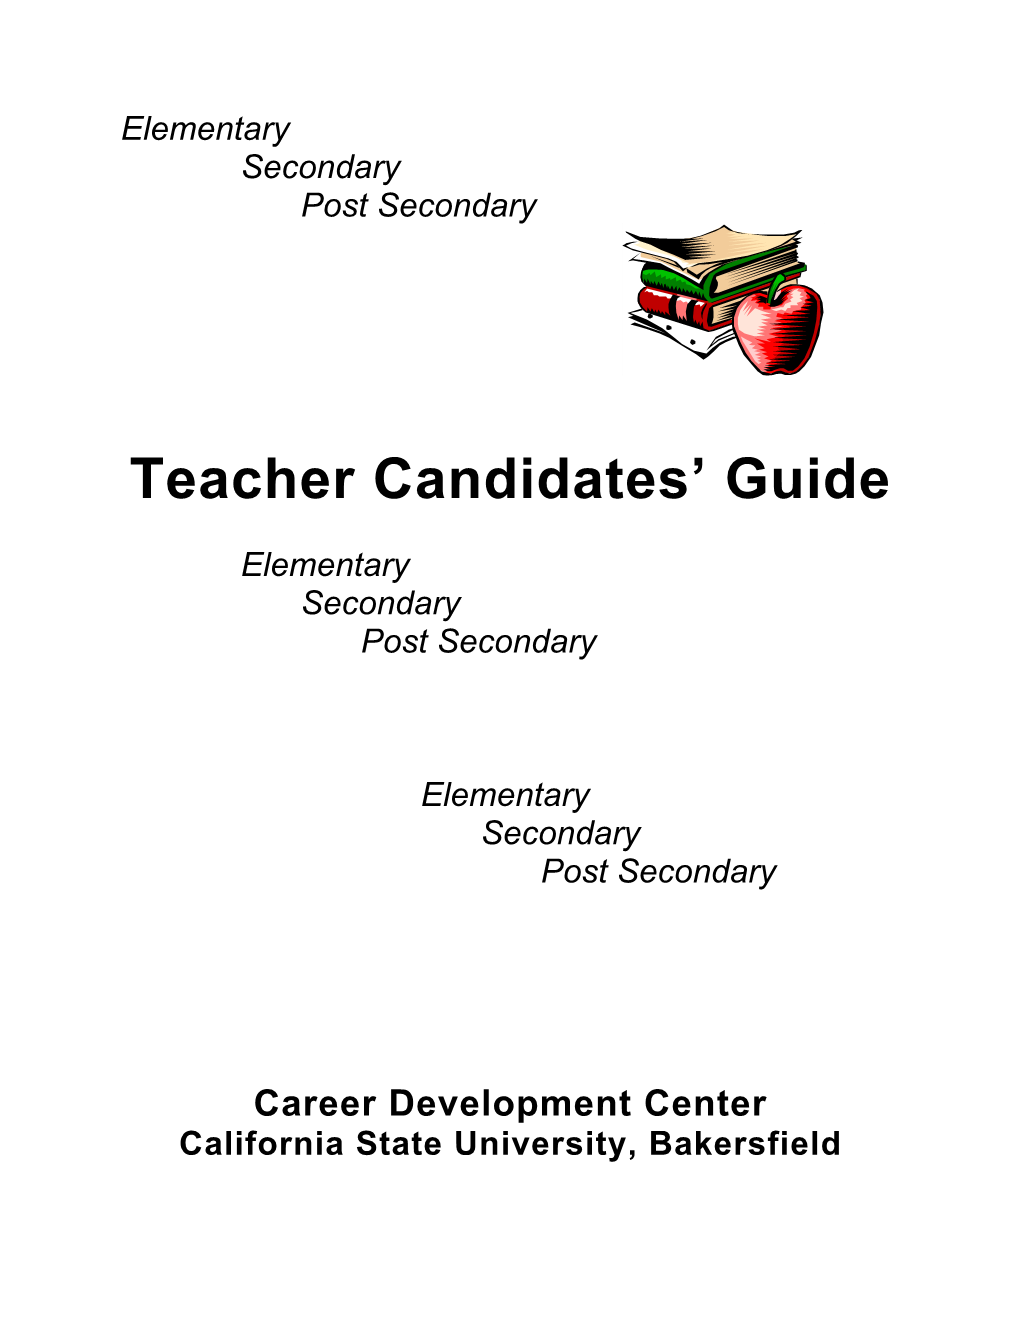 Teacher Candidate Guide